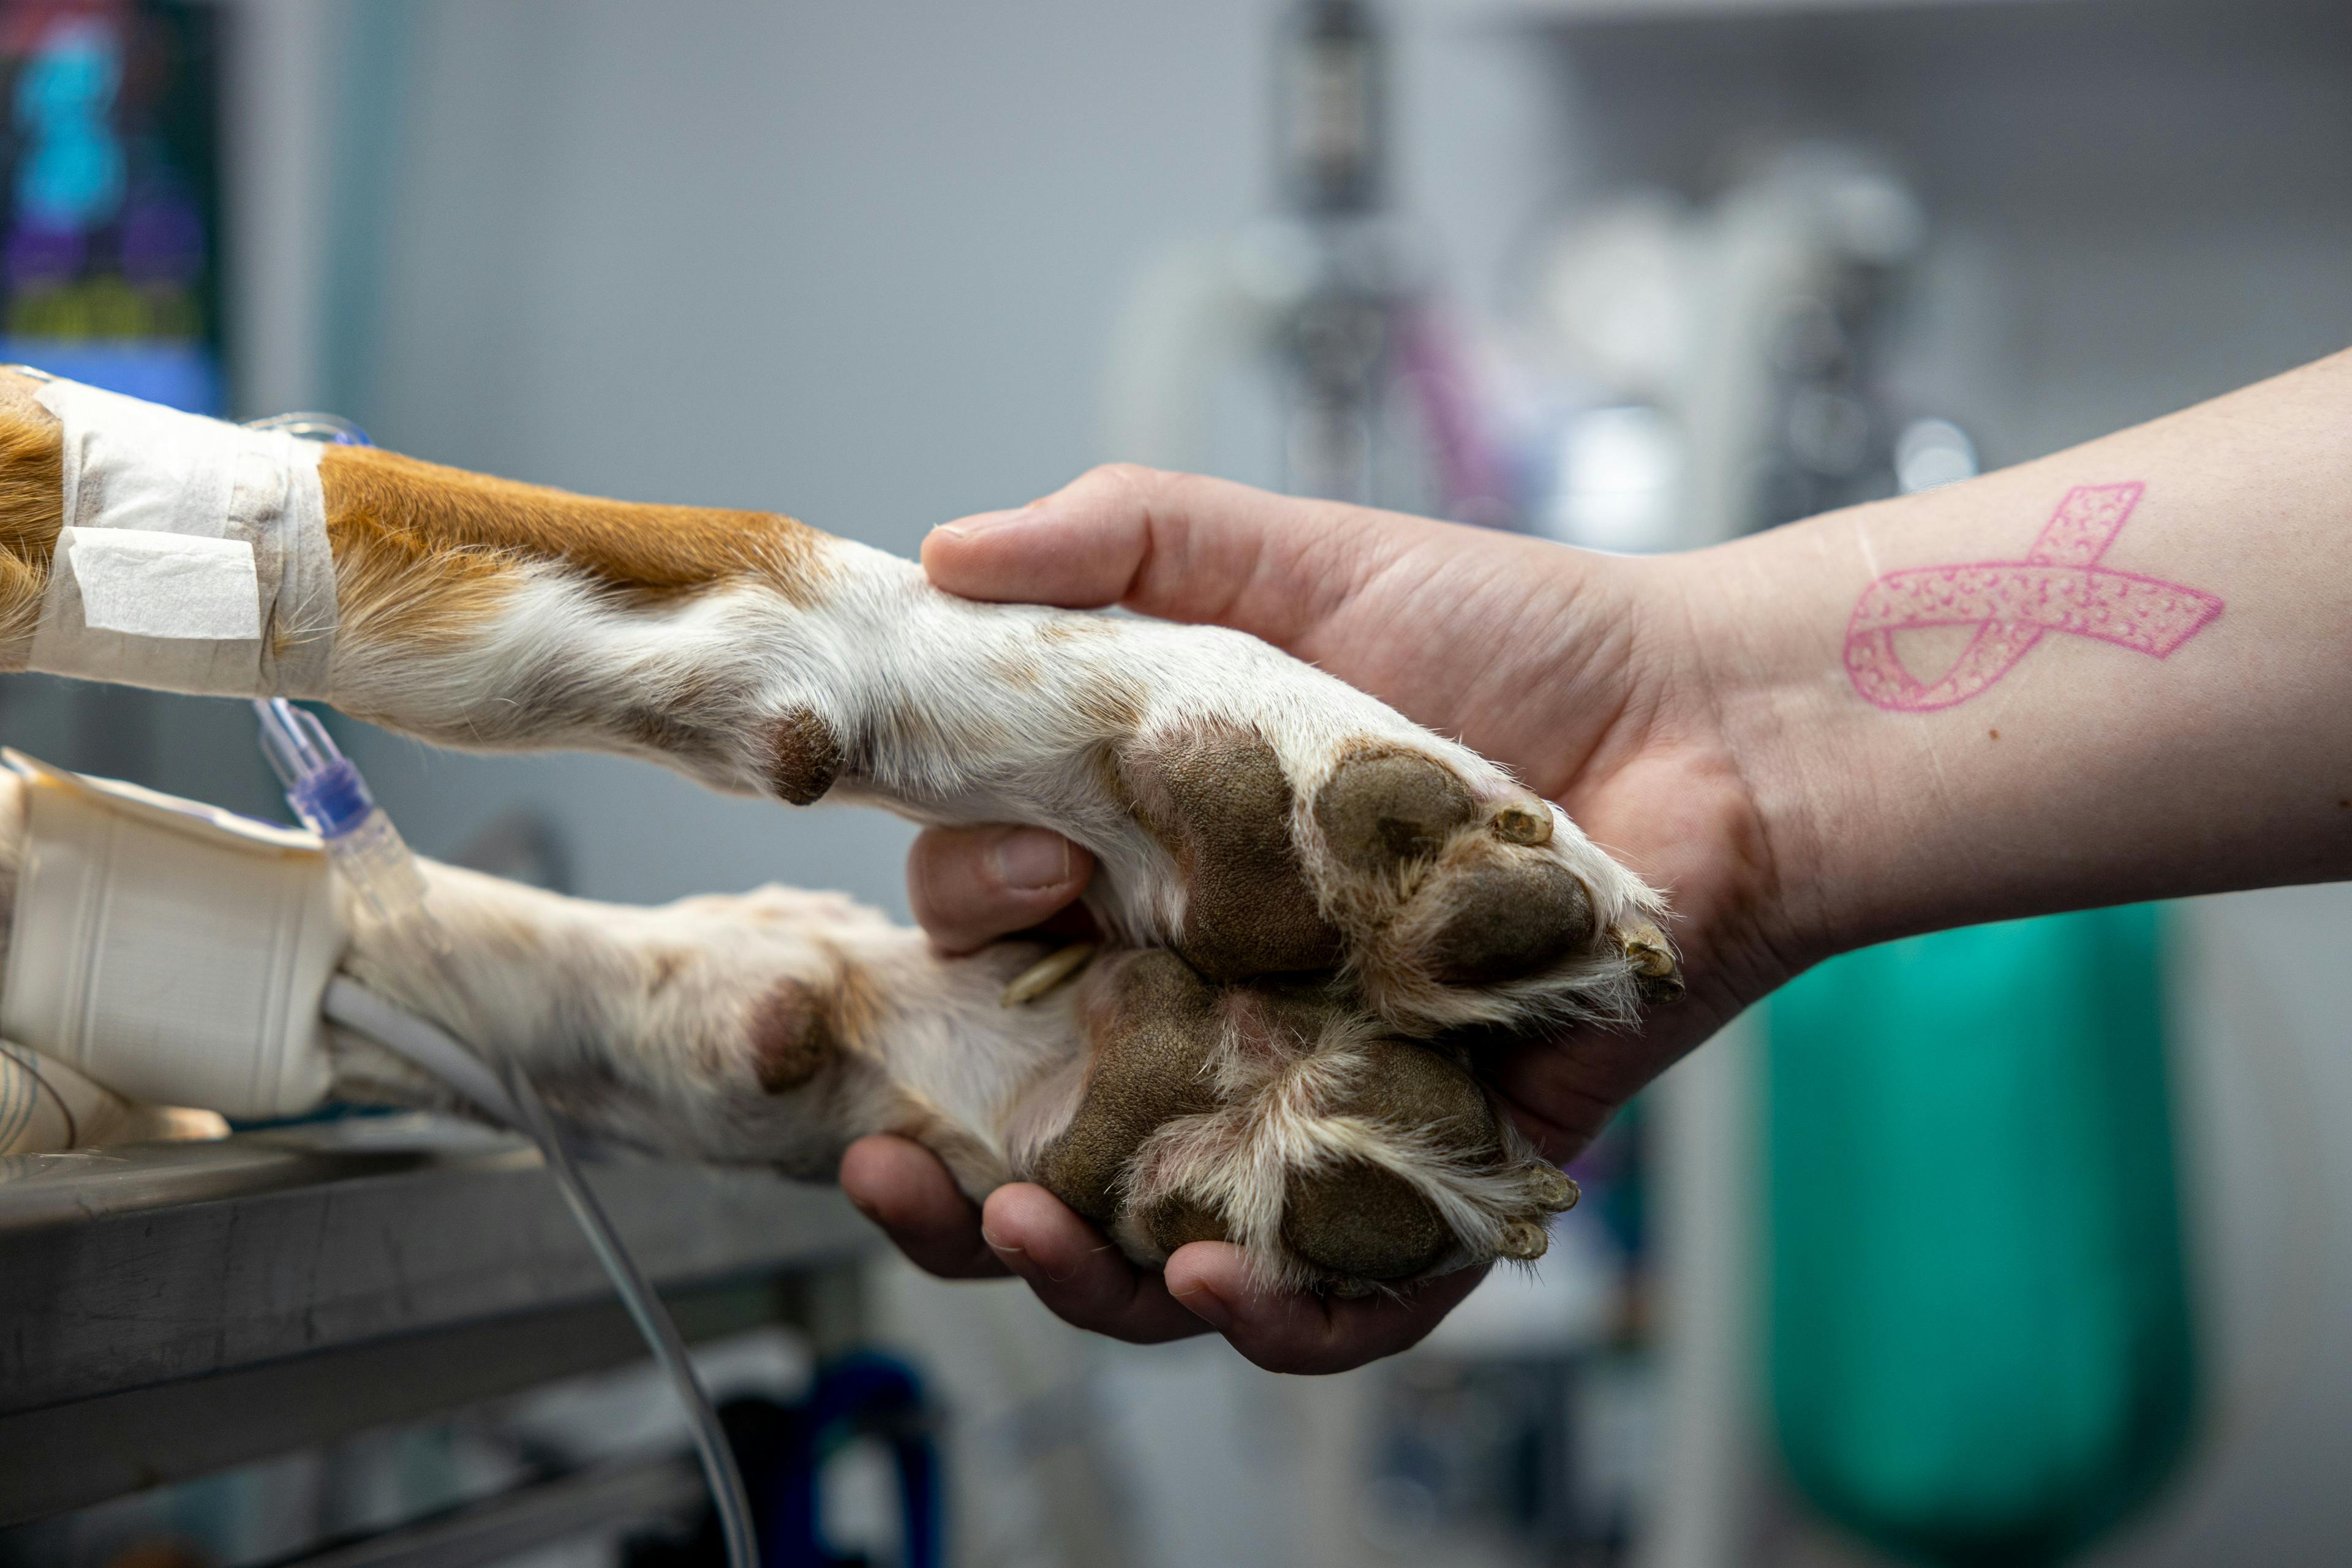 New partnership brings donation system to veterinary clinics 